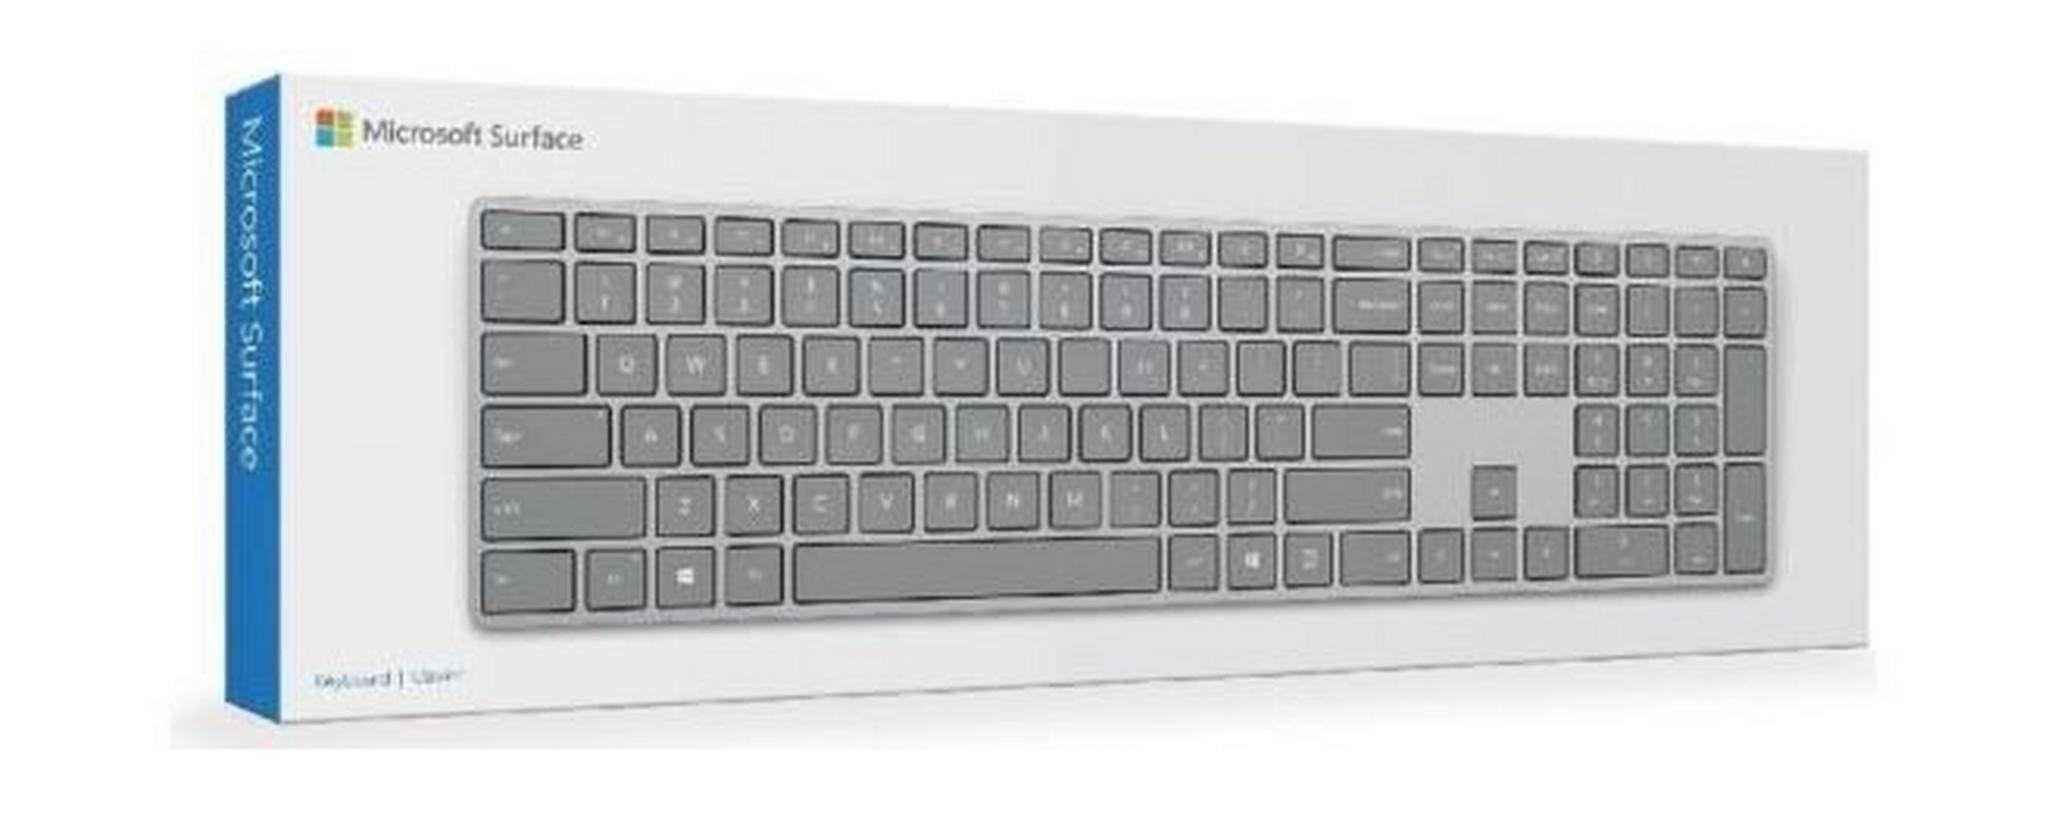 لوحة المفاتيح مايكروسوفت سيرفيس بتقنية البلوتوث-  WS200022